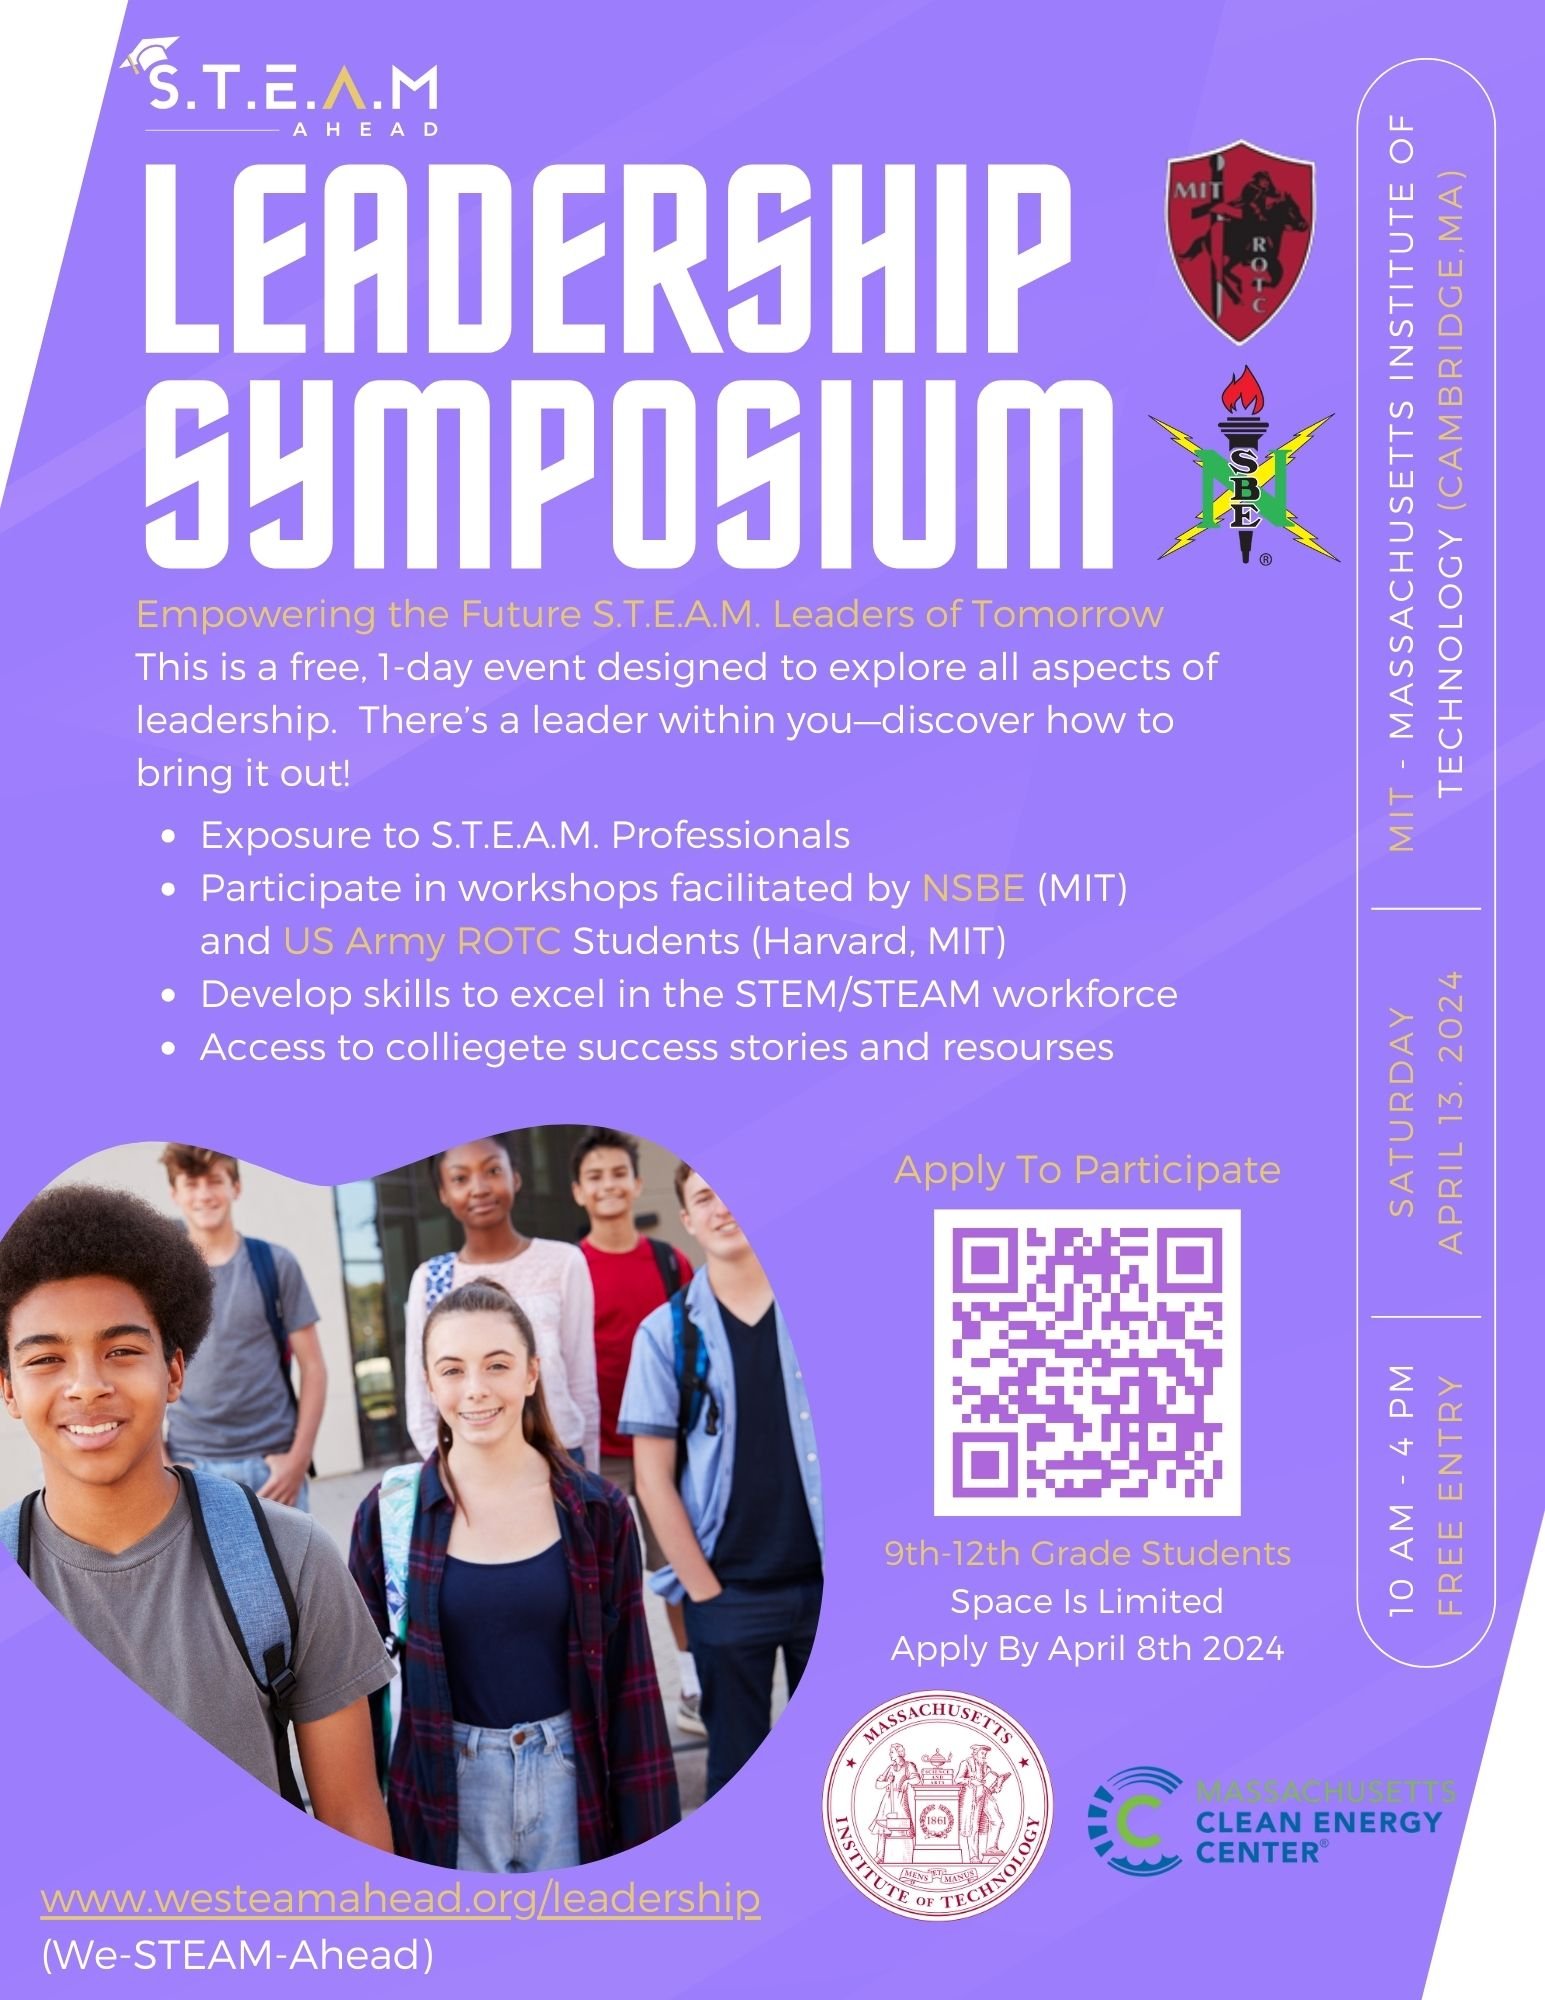 STEAM Ahead - Leadership Symposium (April 13, 2024).jpg